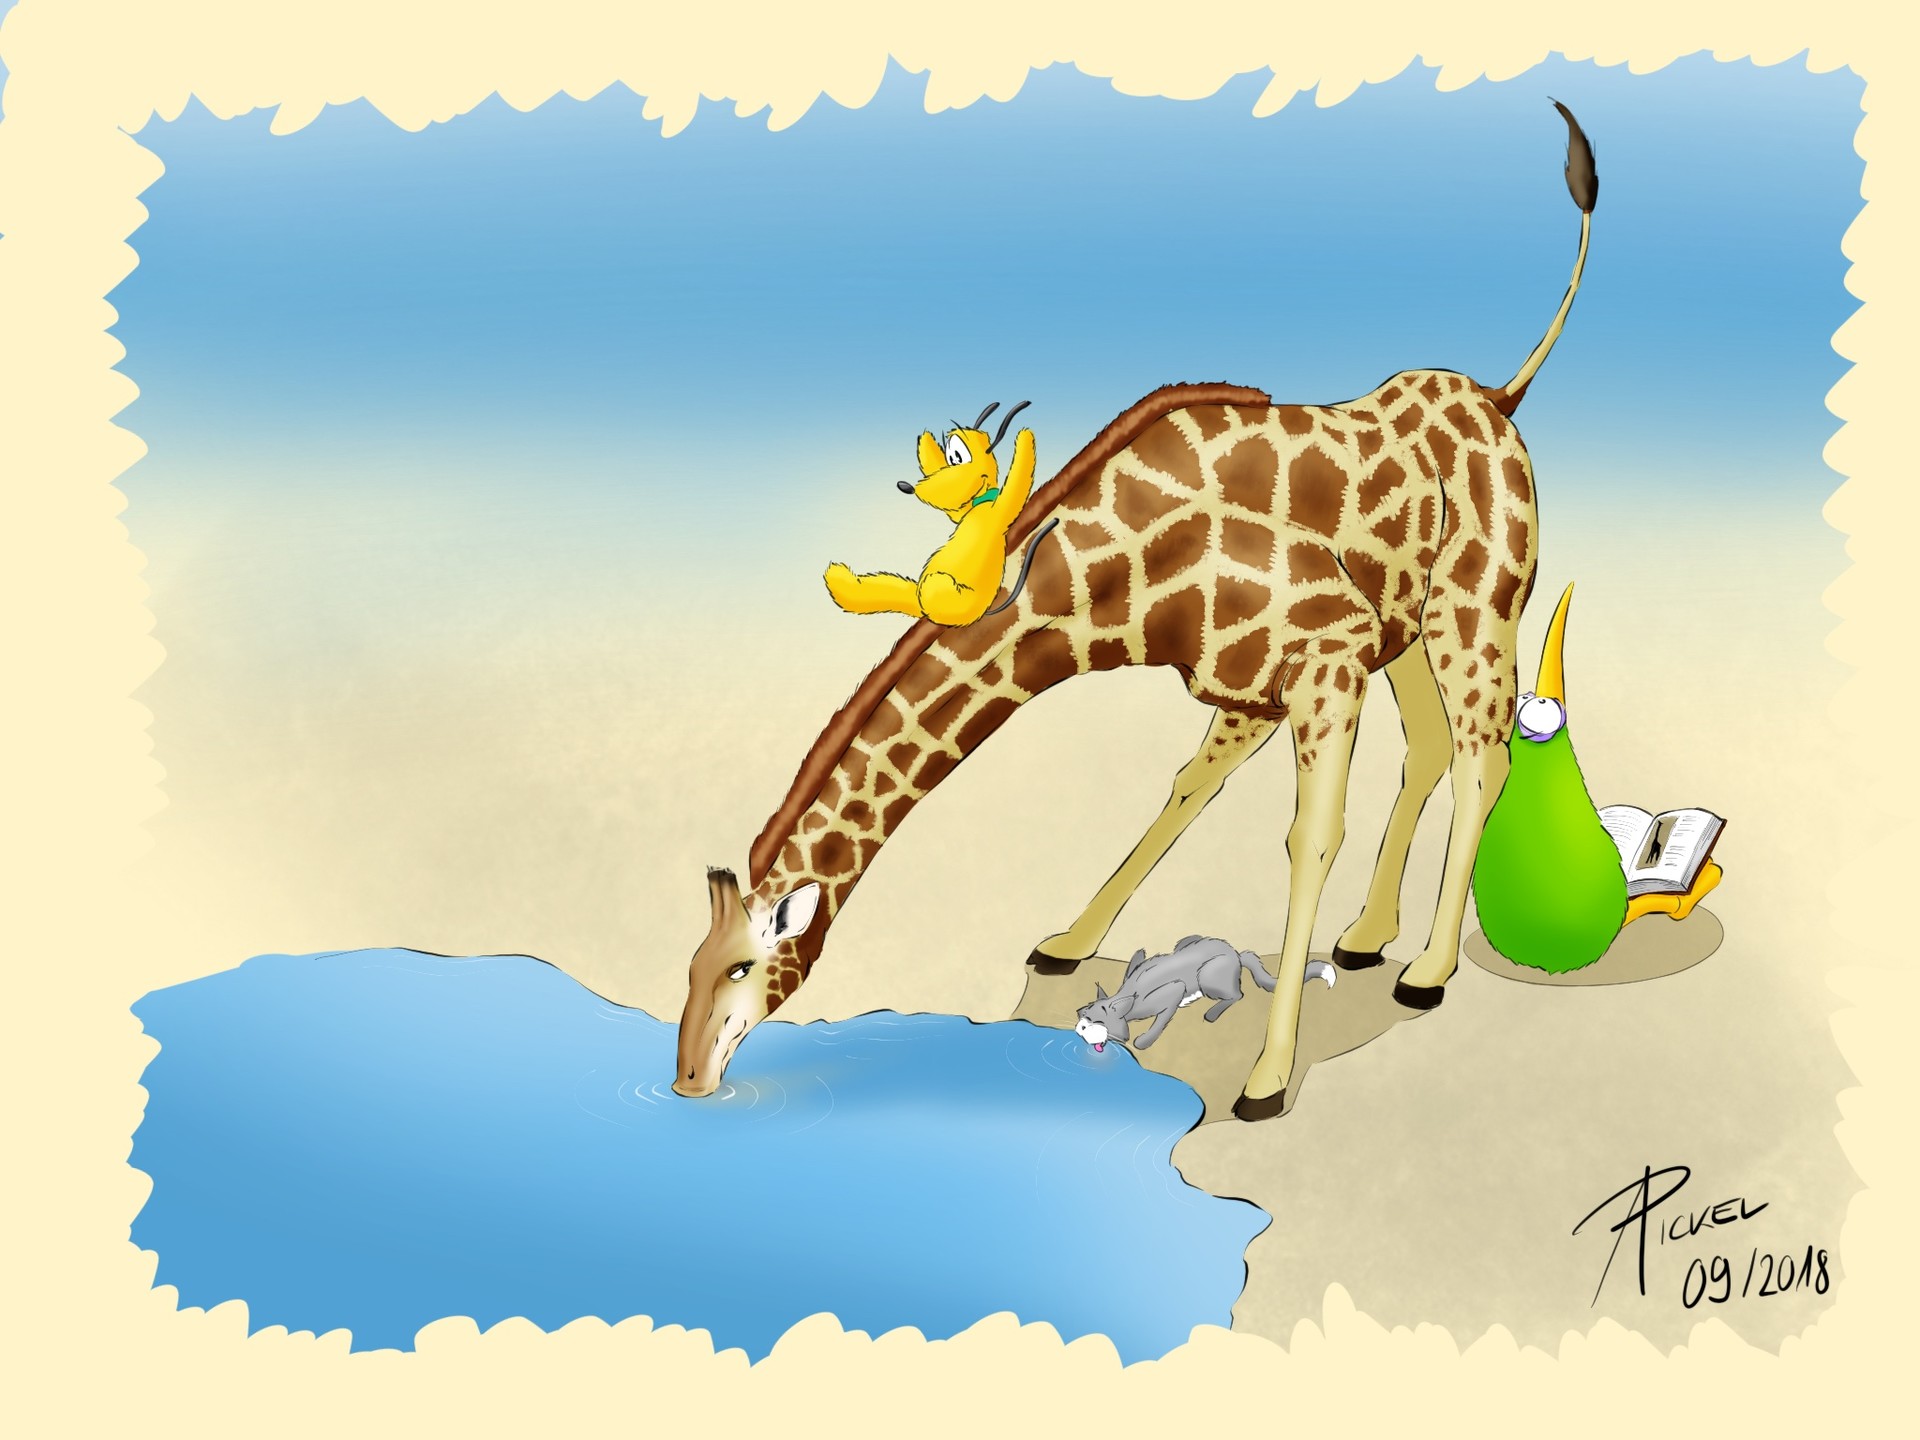 Andreas Pickel - Day 44 - Giraffe